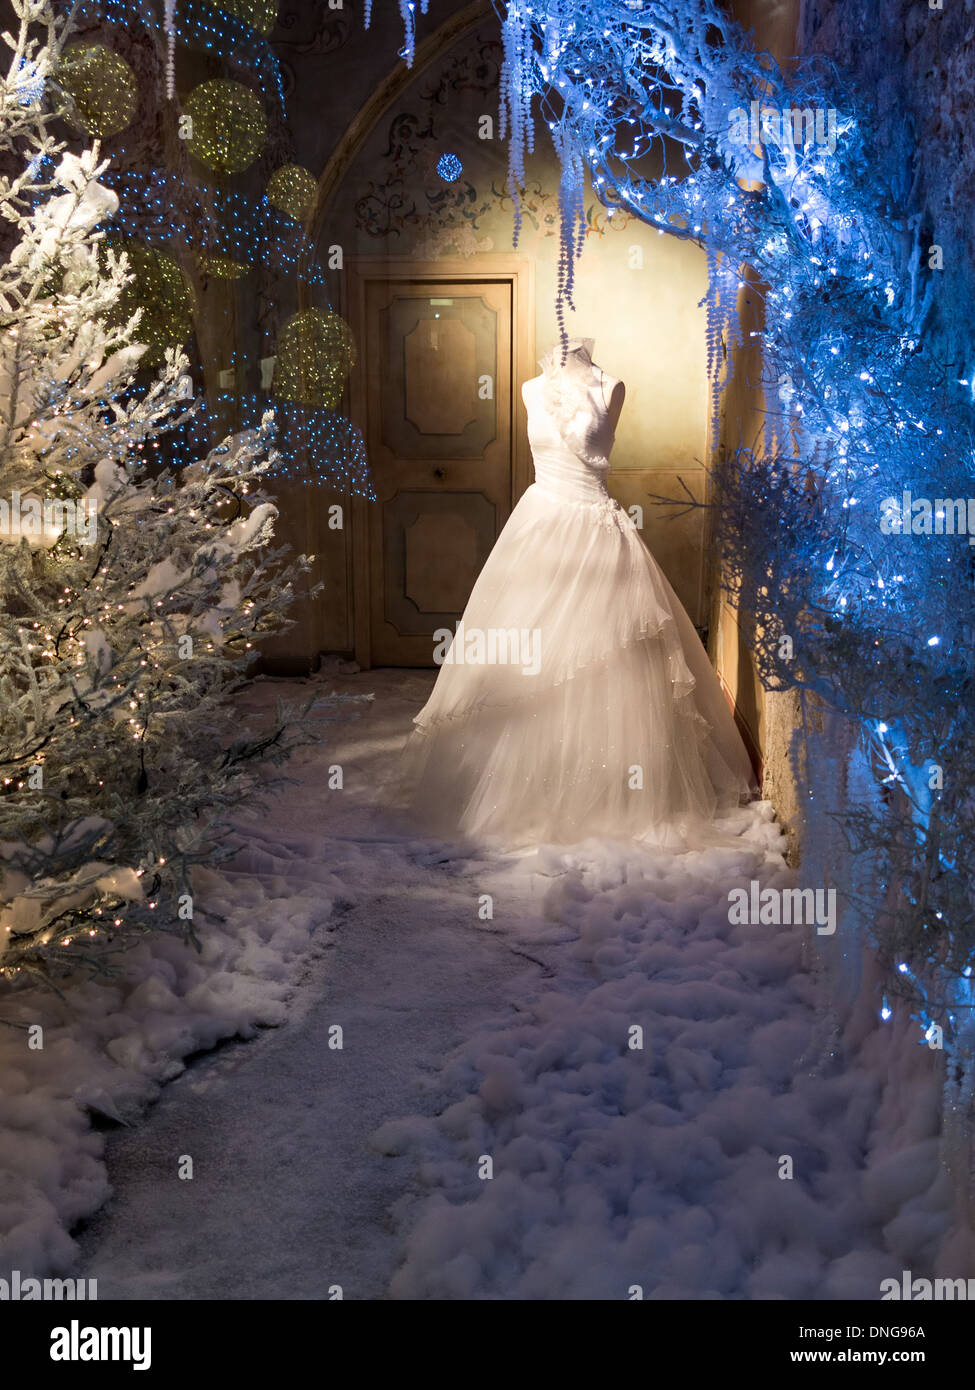 Inverno vetrinistica di un negozio di vendita al dettaglio con luci blu e neve con un elegante abito su un manichino Foto Stock